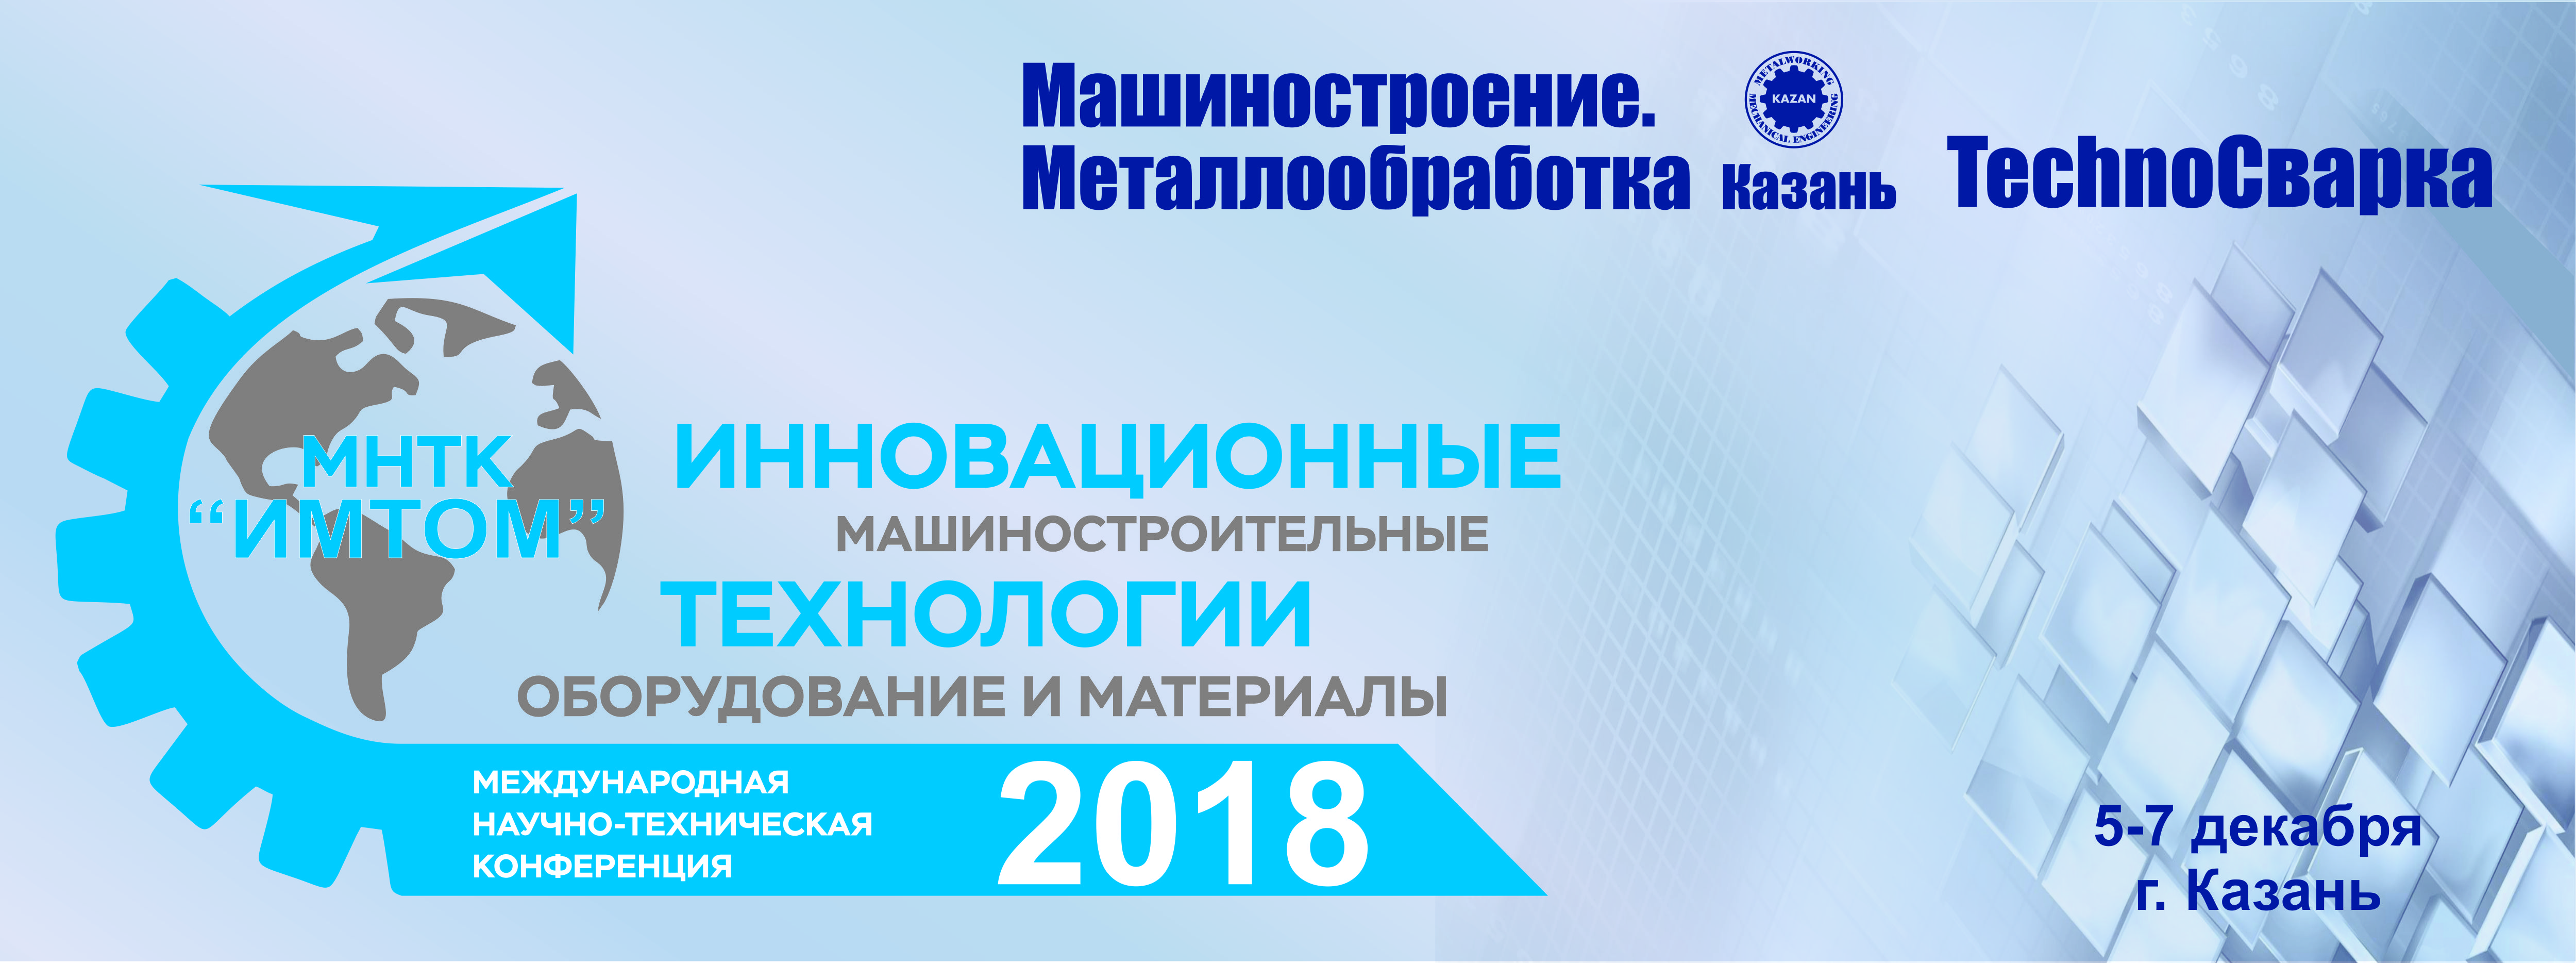 Приглашение на конференцию МНТК "ИМТОМ-2018"